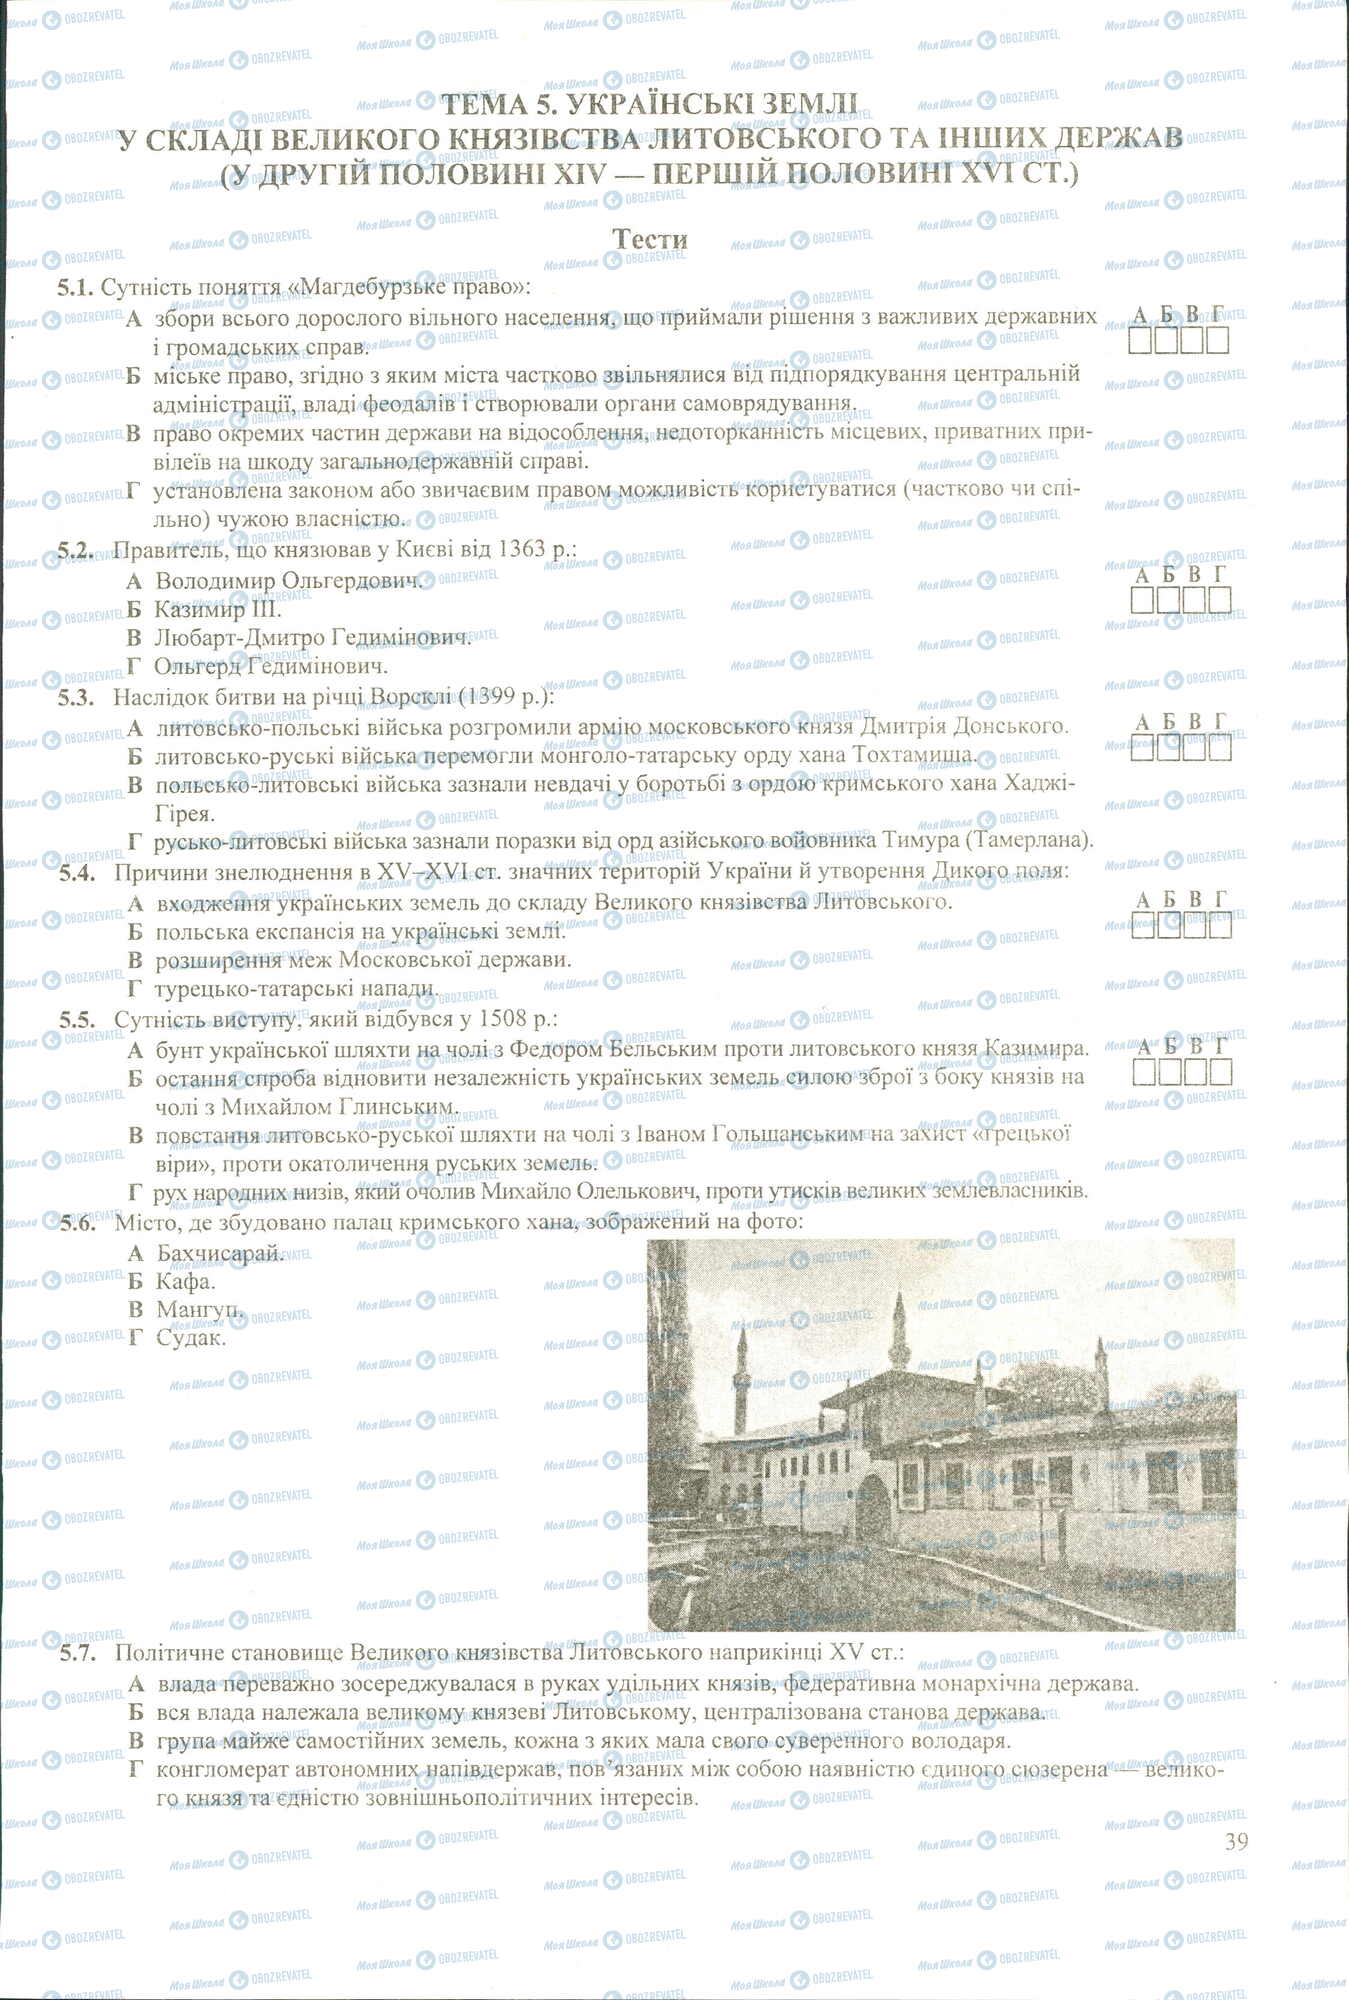 ЗНО История Украины 11 класс страница 5.1-5.7